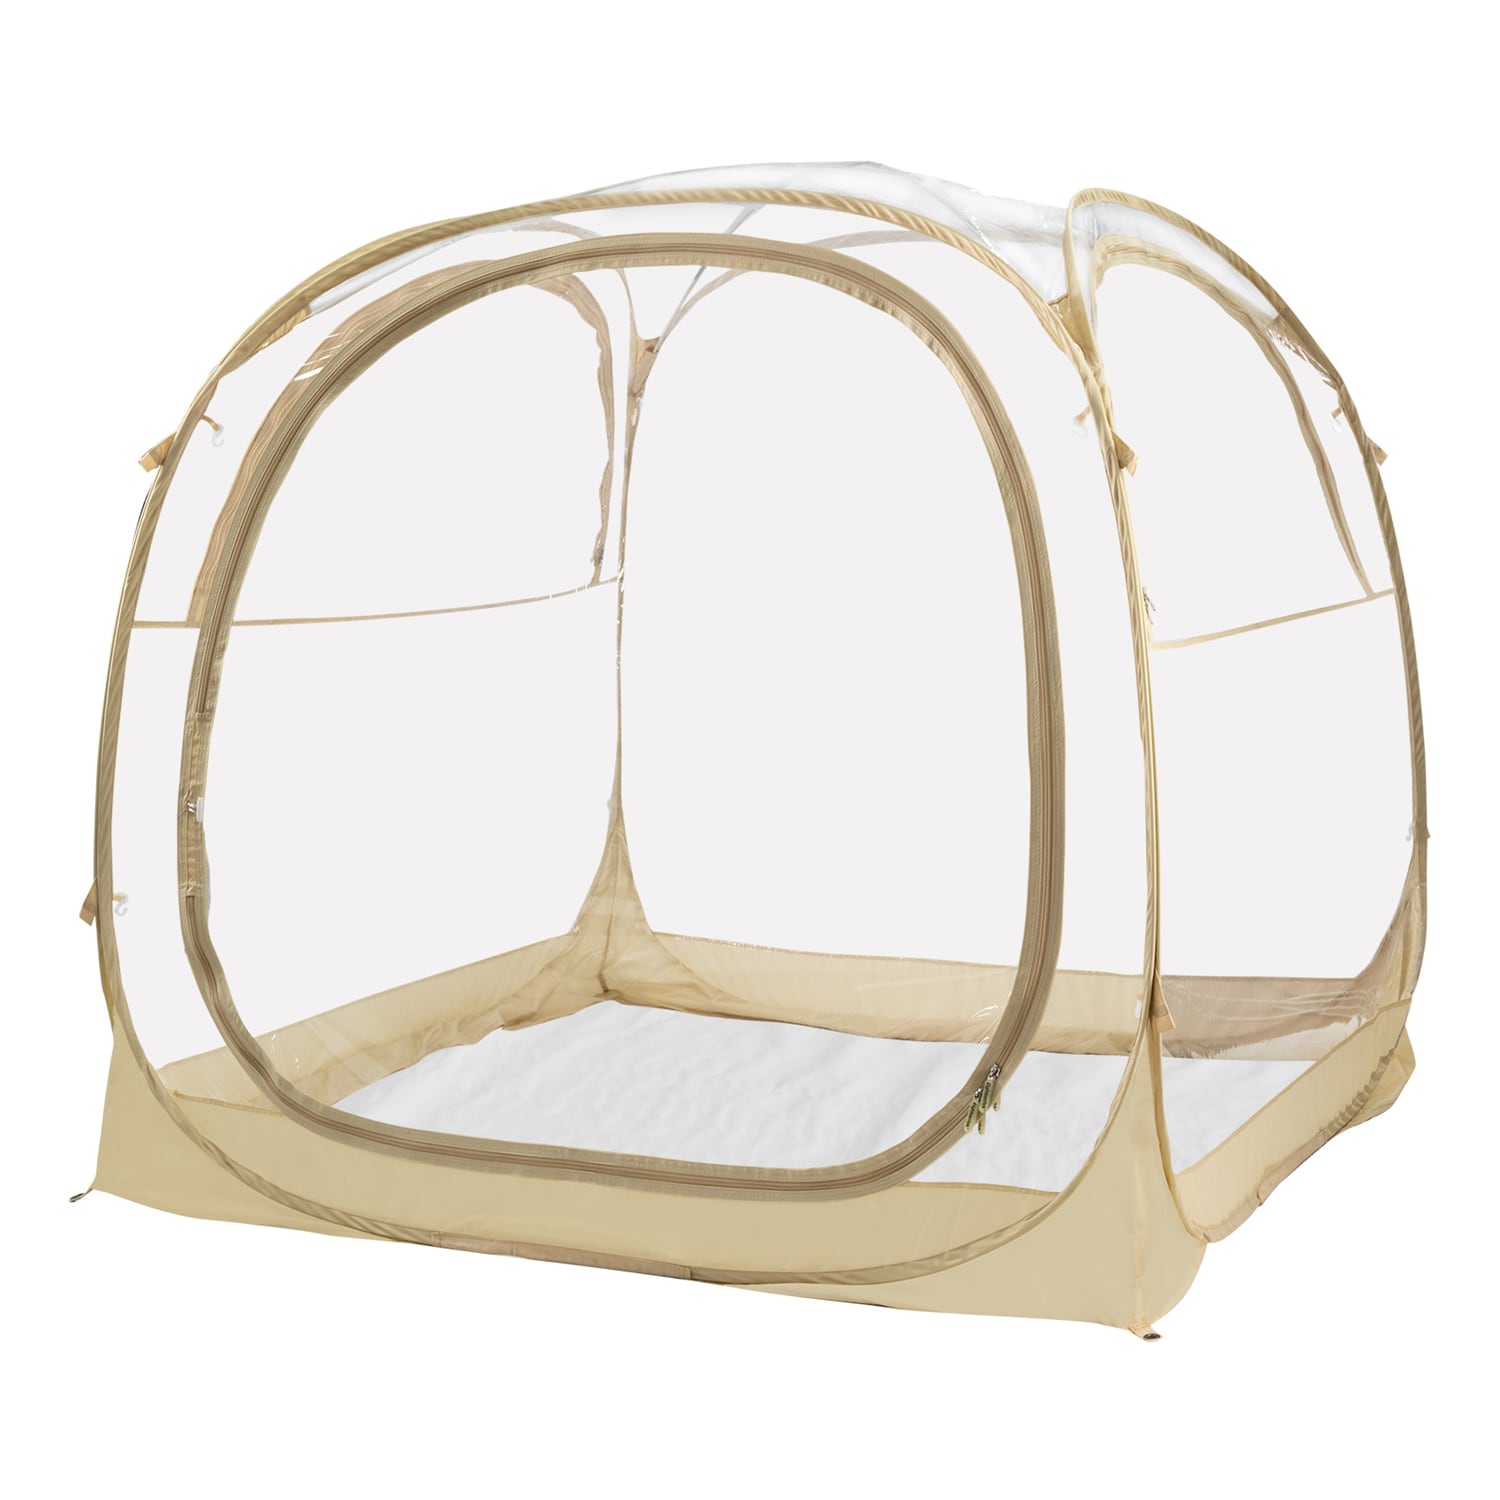 HVAC Tents - Air Distribution Concepts